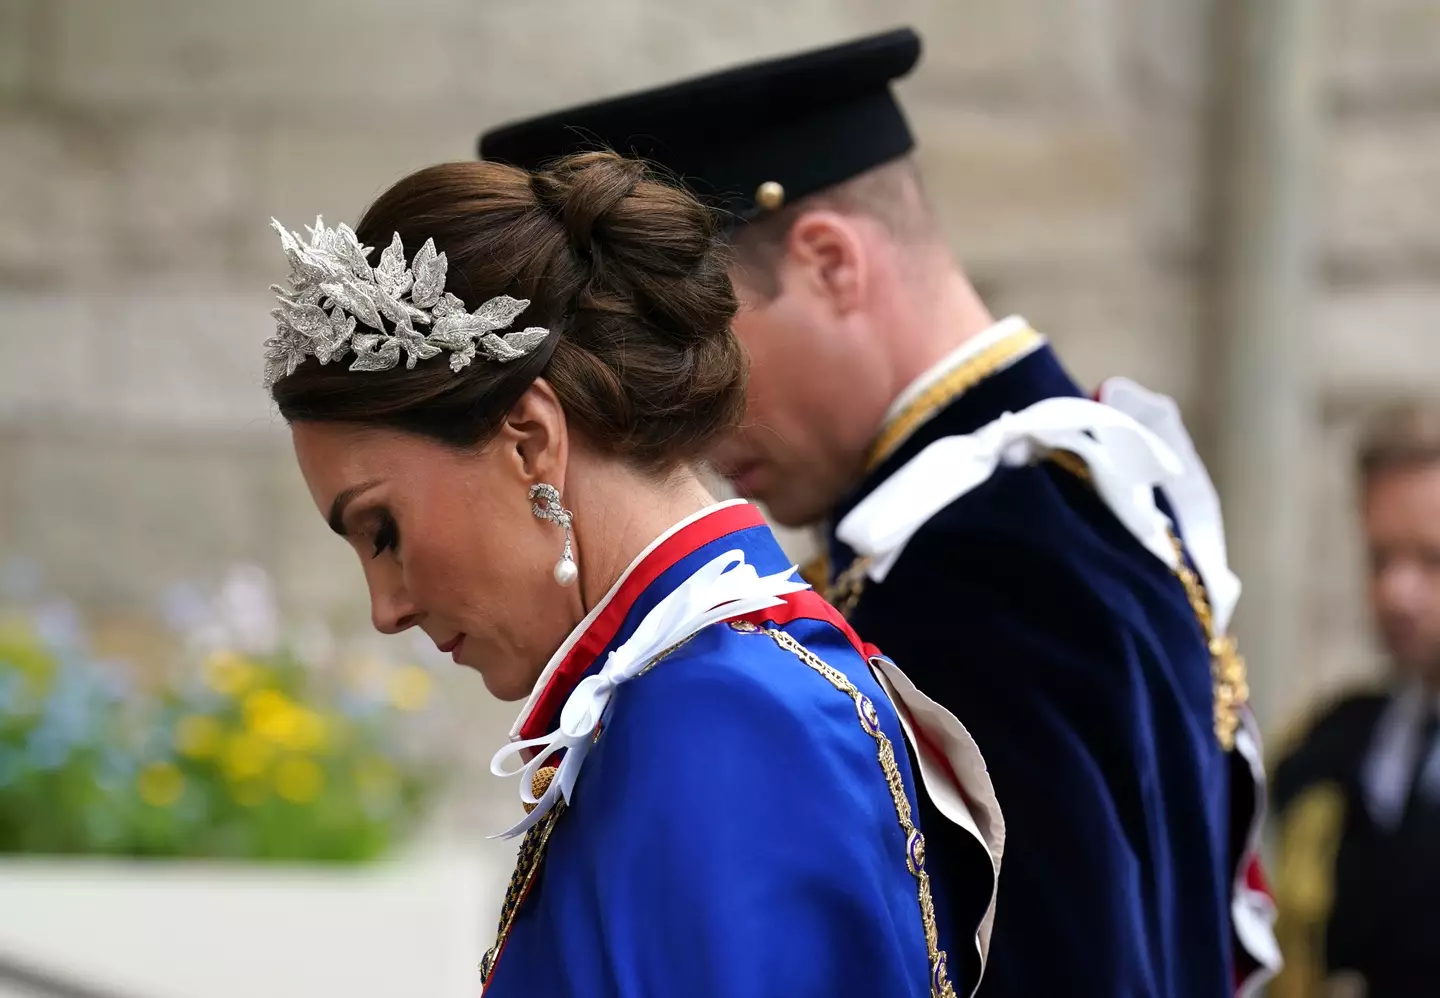 The Princess' earrings paid tribute to Princess Di.